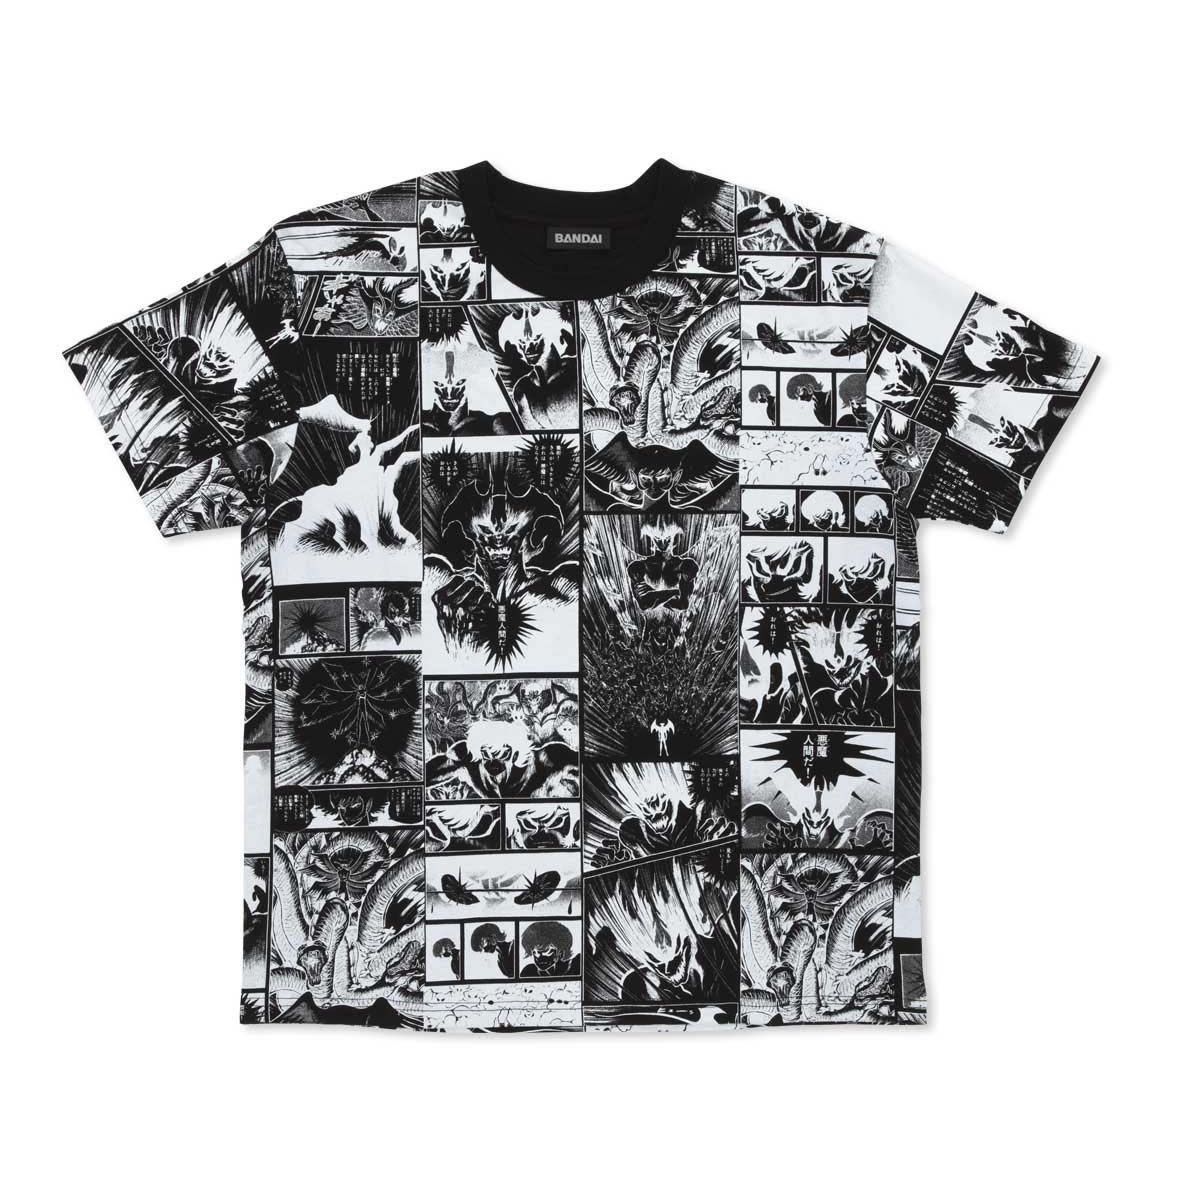 DEVILMAN デビルマン Tシャツ 永井豪 80's 80年代Tシャツ/カットソー(半袖/袖なし)